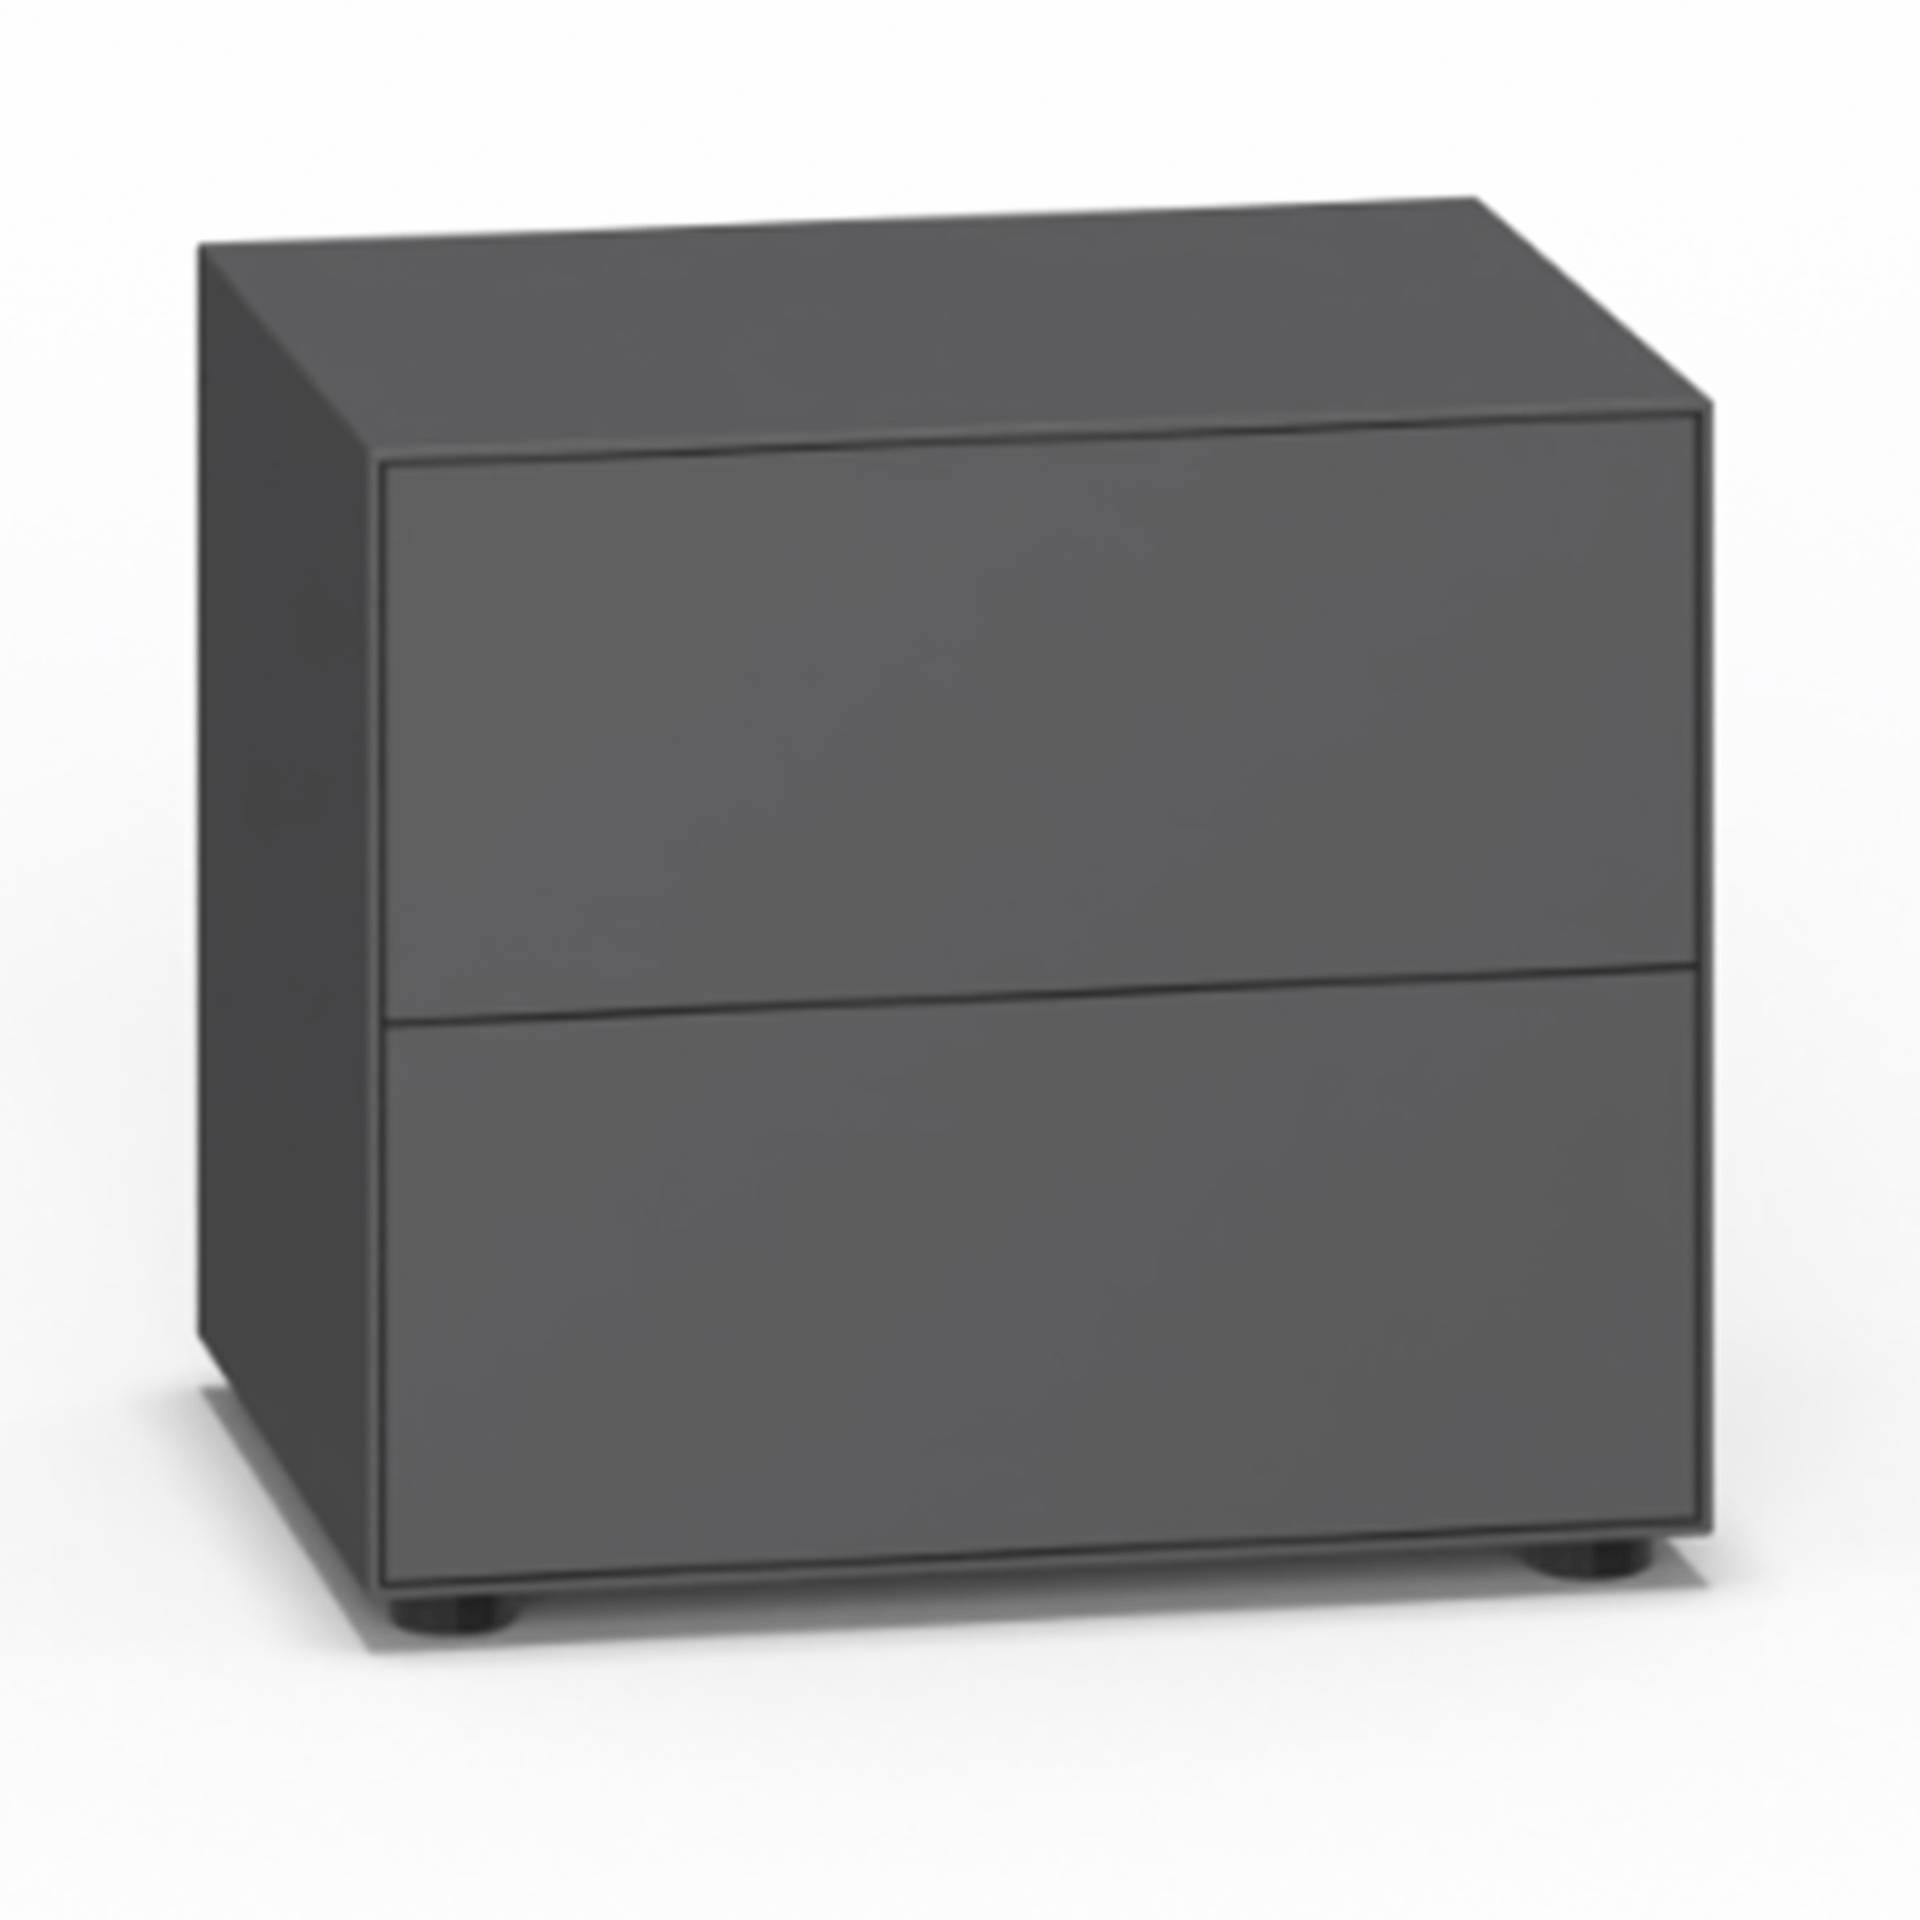 Piure - Nex Pur Box Nachttisch 60x50x48cm - graphit/MDF matt lackiert/BxHxT 60x50x48cm/mit Gleitfüße von Piure